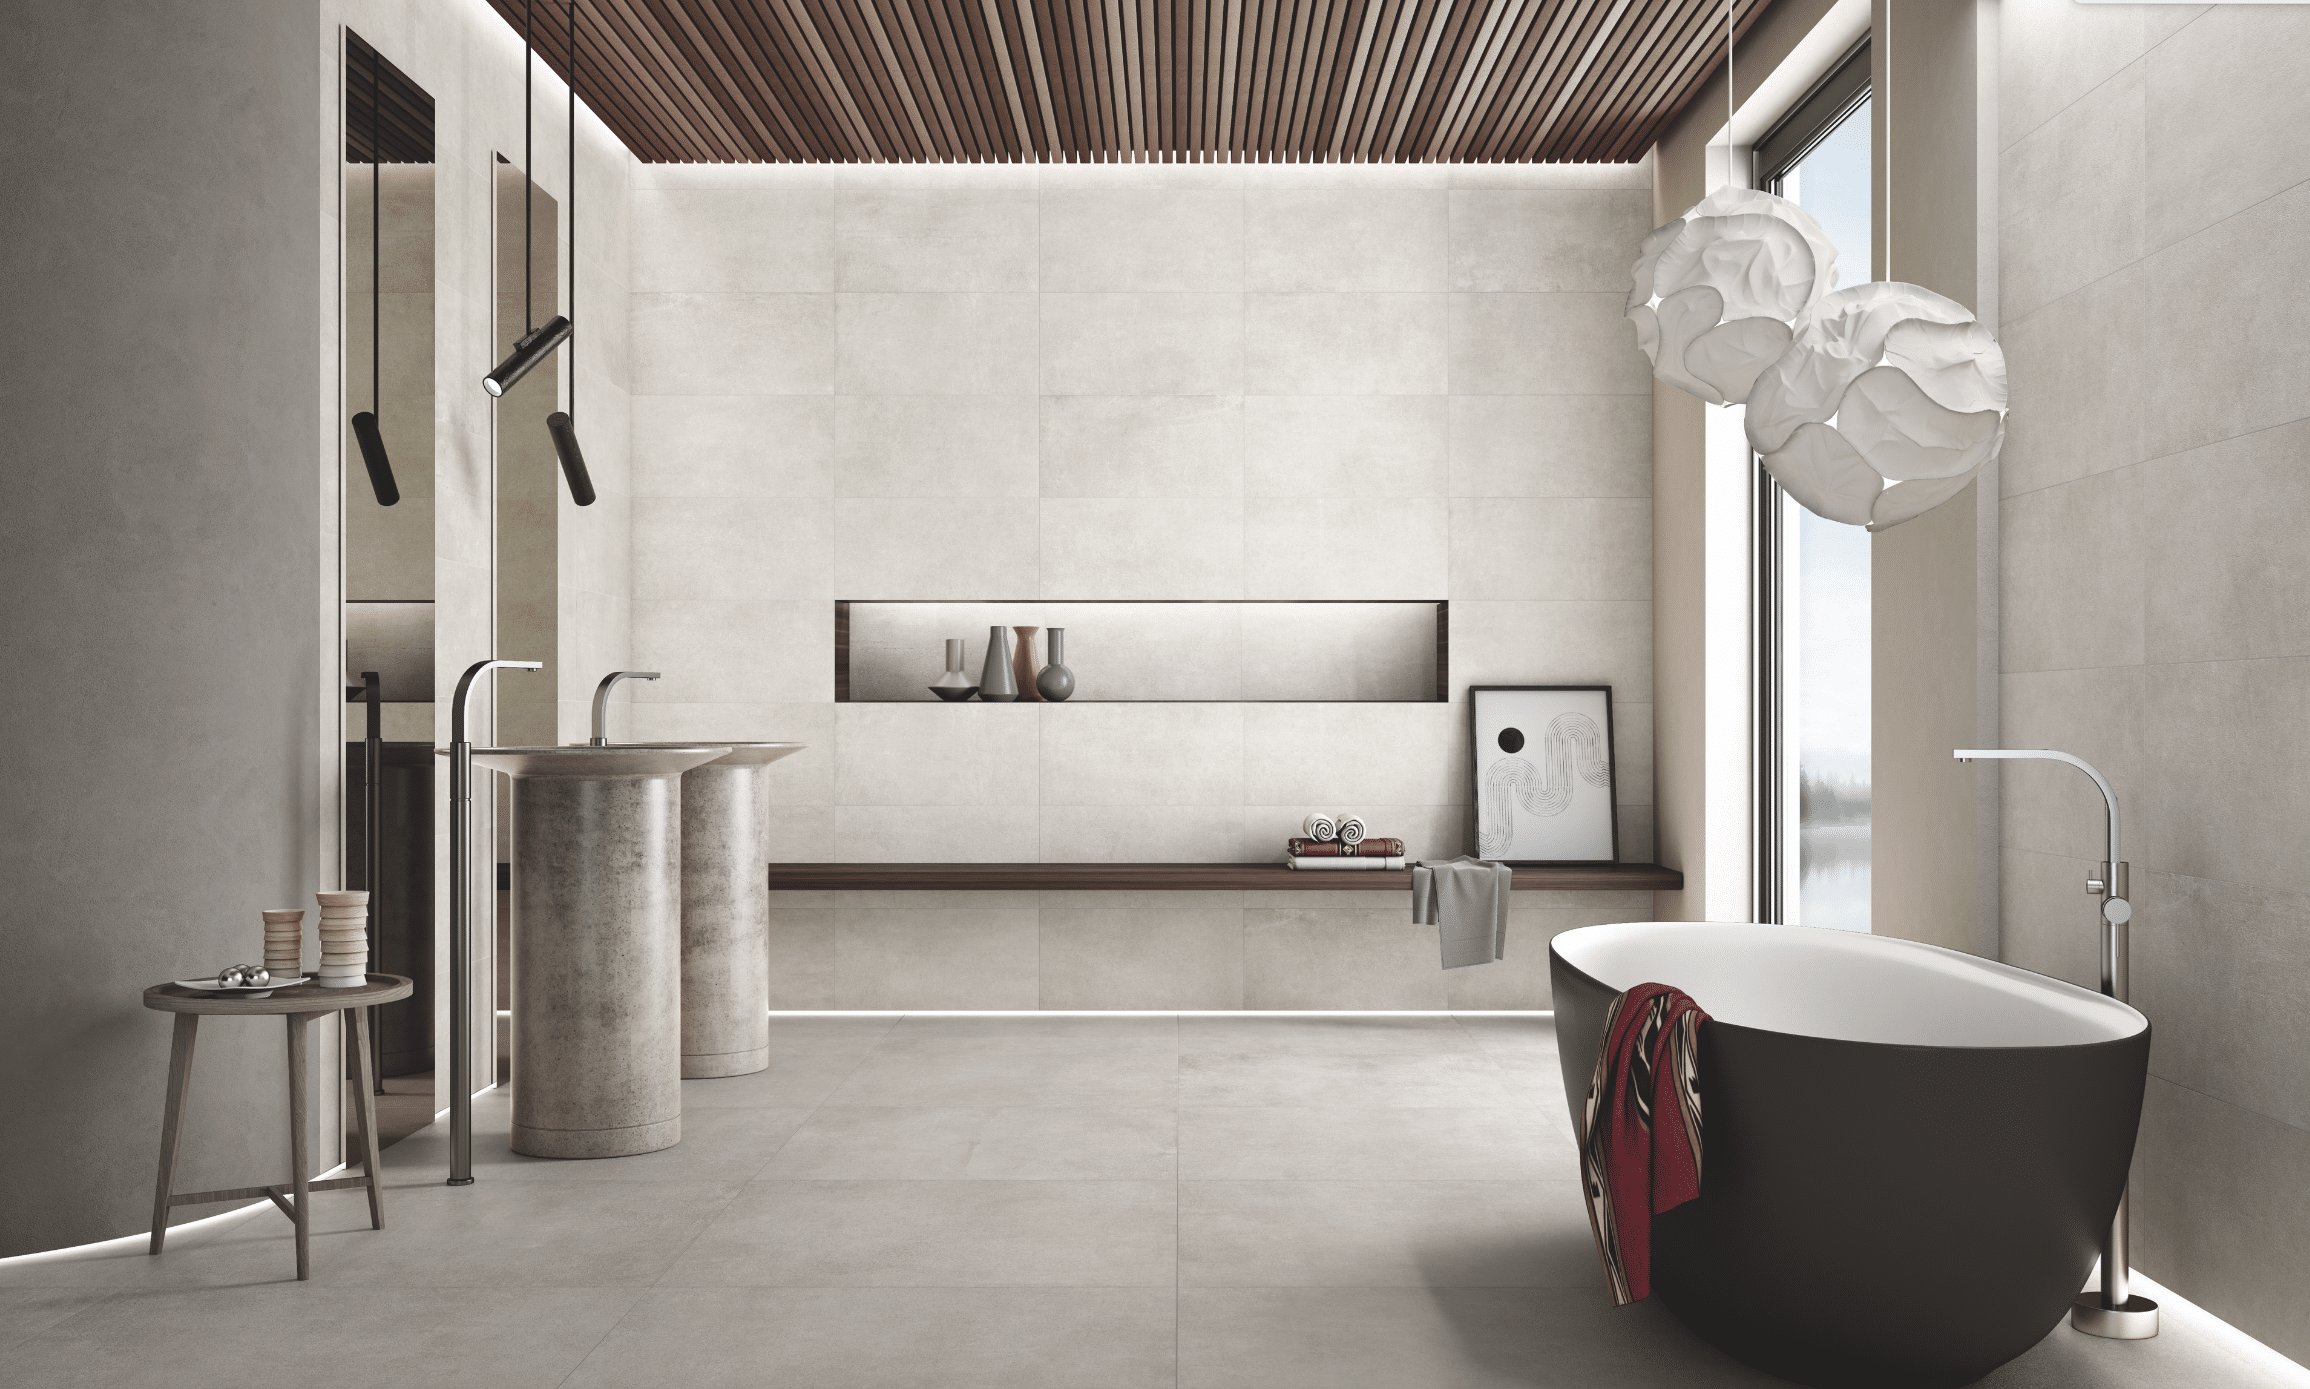 Fliesendorf zeigt ein Badezimmer mit hellem Fliesenboden und gefliester Wand mit einer dunklen, freistehenden Badewanne und Waschtisch mit silberner Armatur.